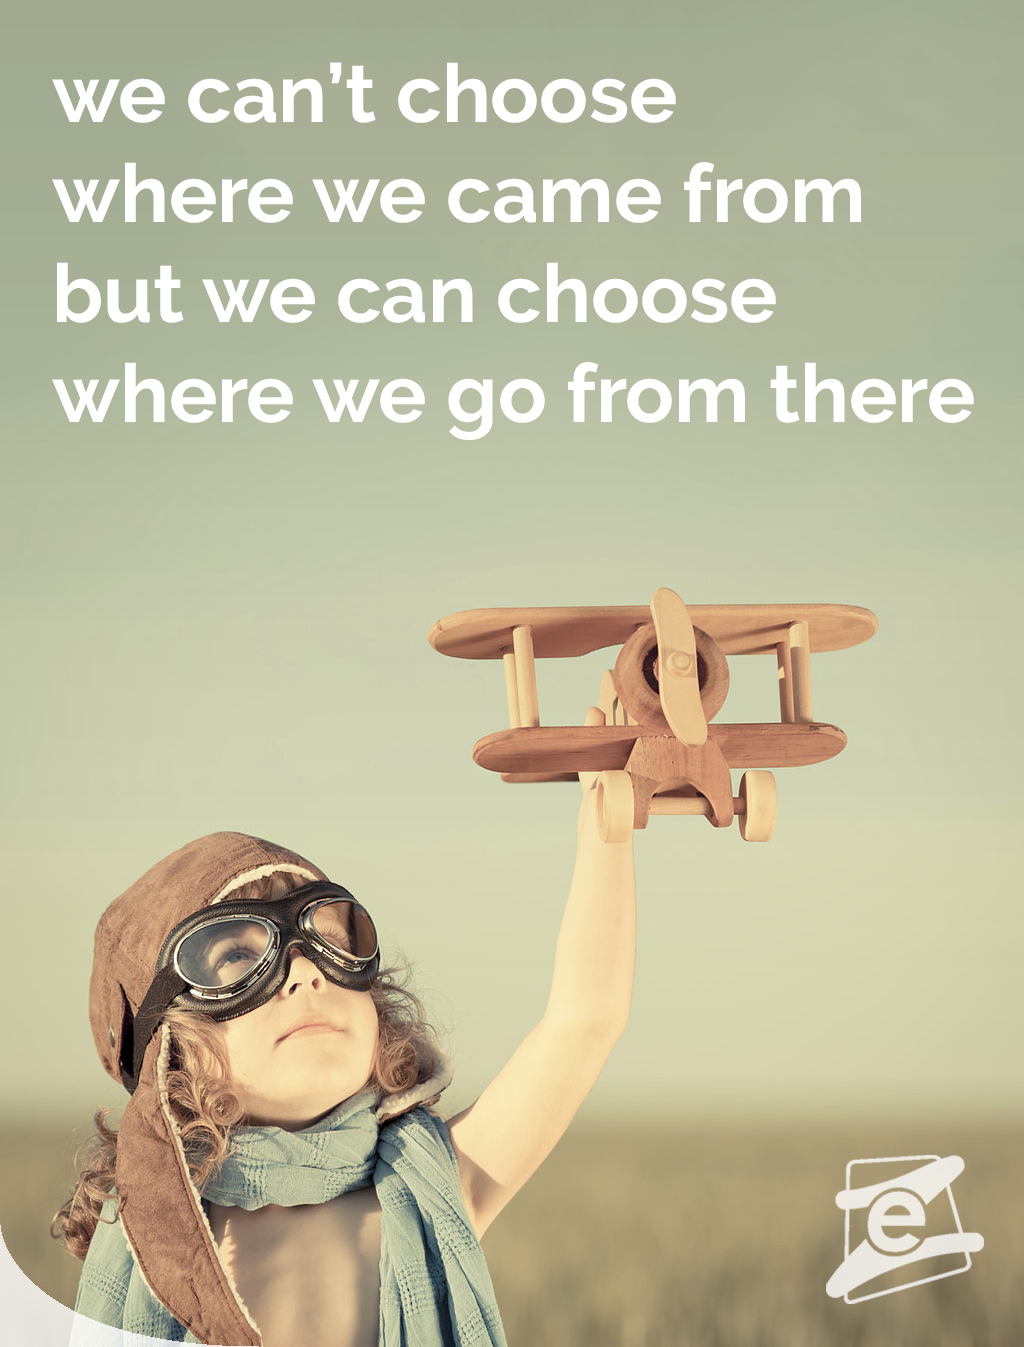 EazyCity - Instagram - travel quote - experiencia al extranjero